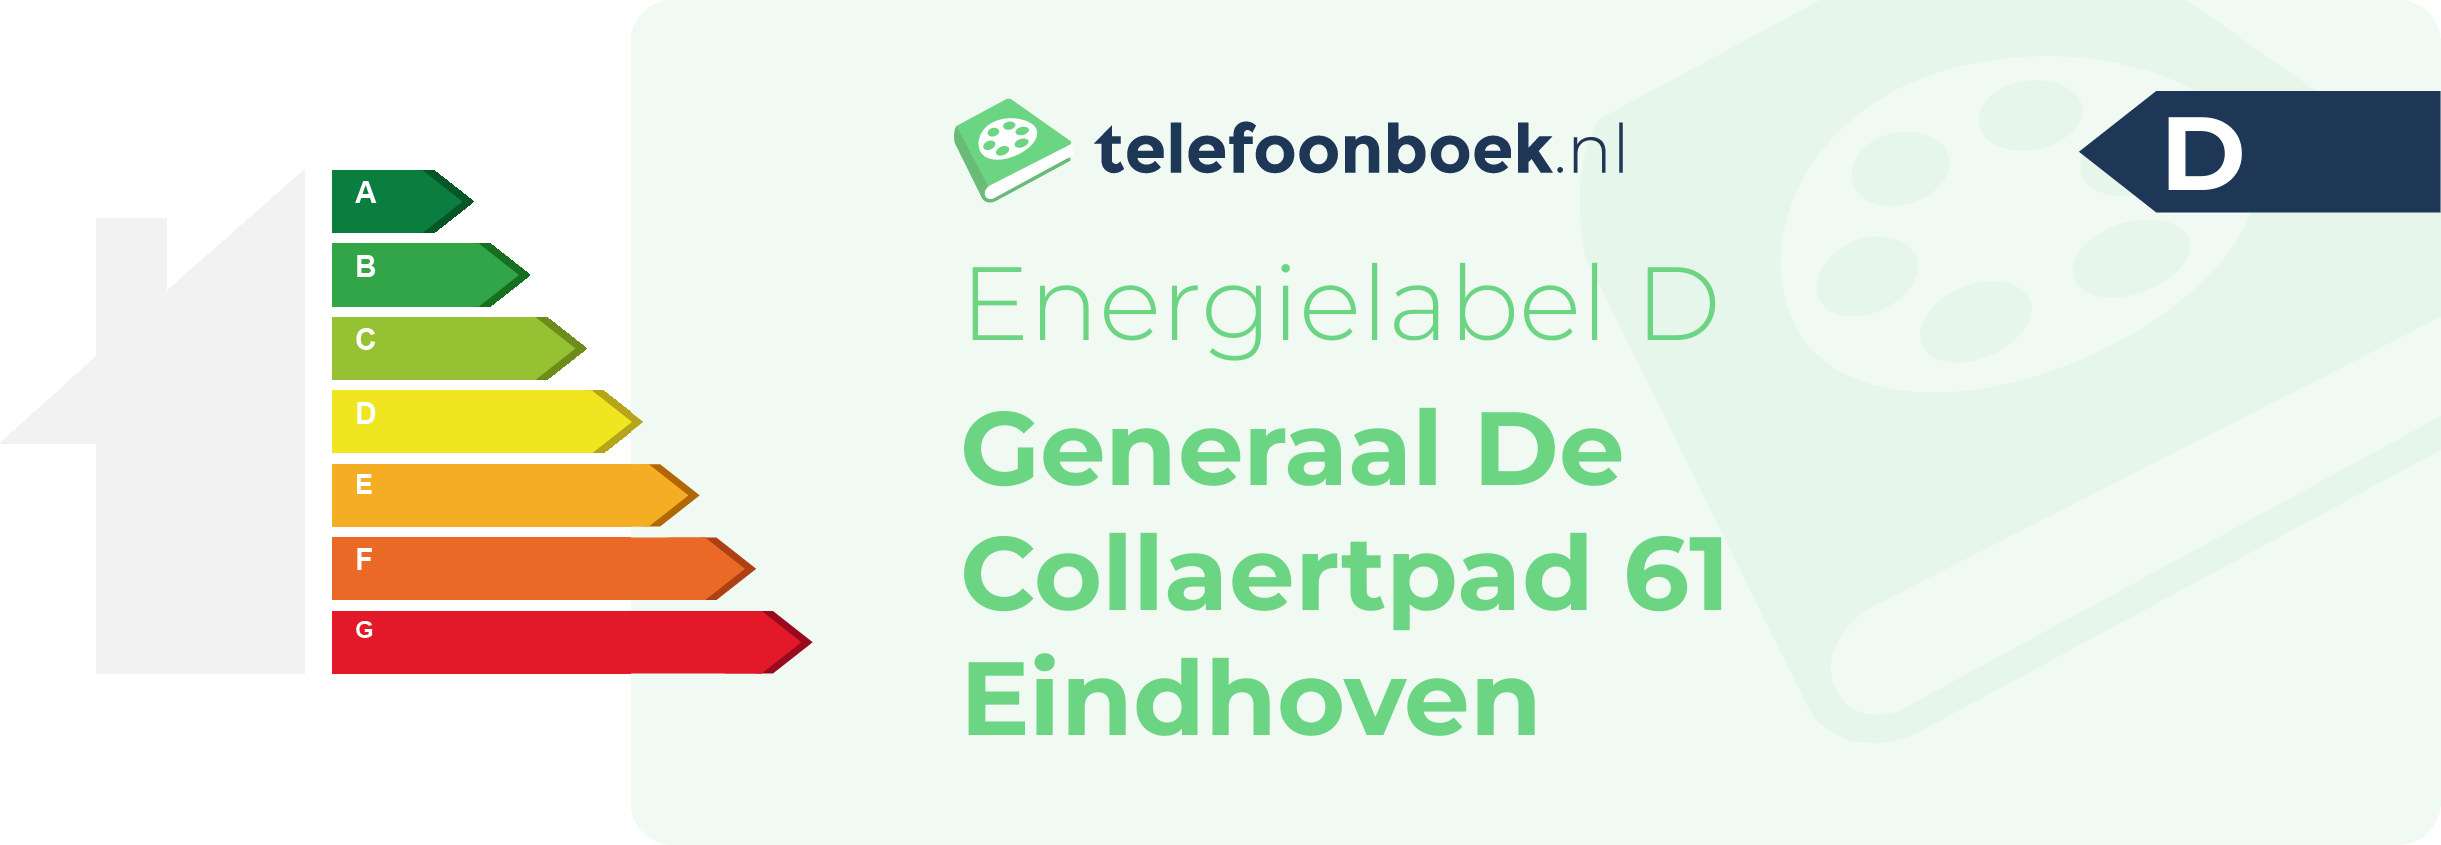 Energielabel Generaal De Collaertpad 61 Eindhoven